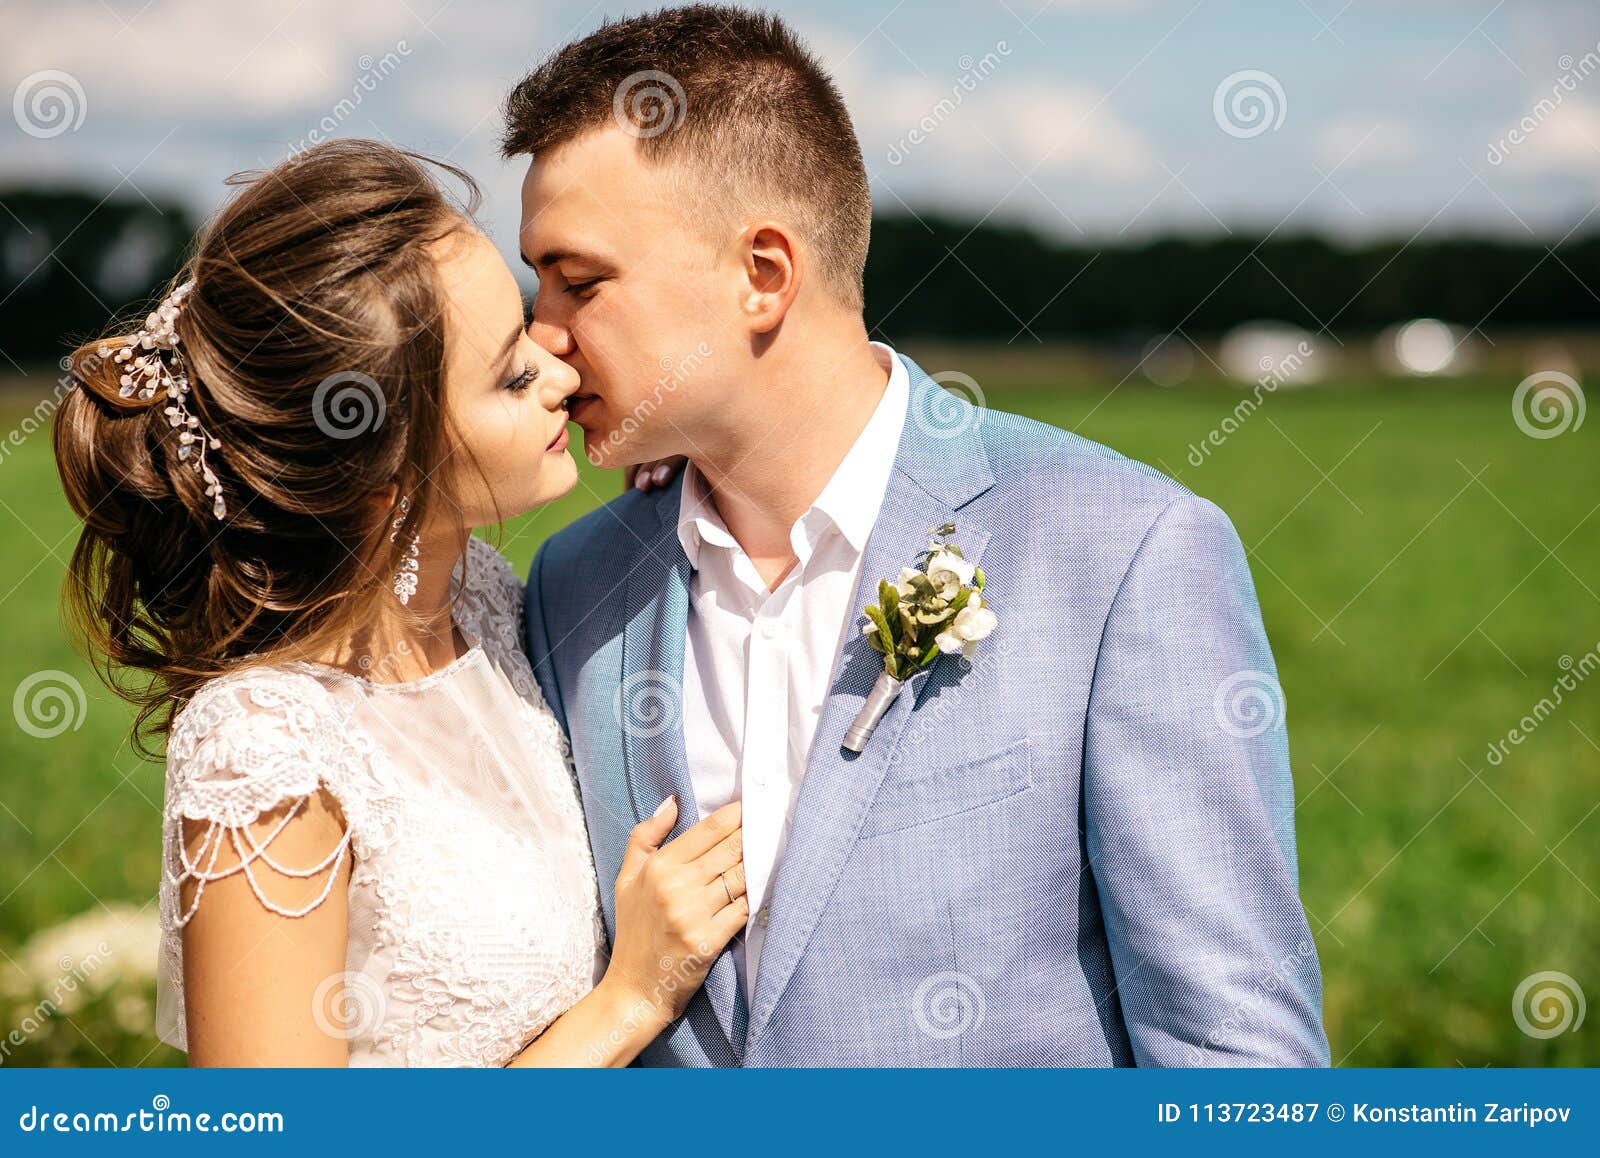 新娘和新郎在他们的婚礼之日 库存照片. 图片 包括有 穿戴, 结婚, 字段, 放松, 户外, 使用, 亲吻 - 35996424